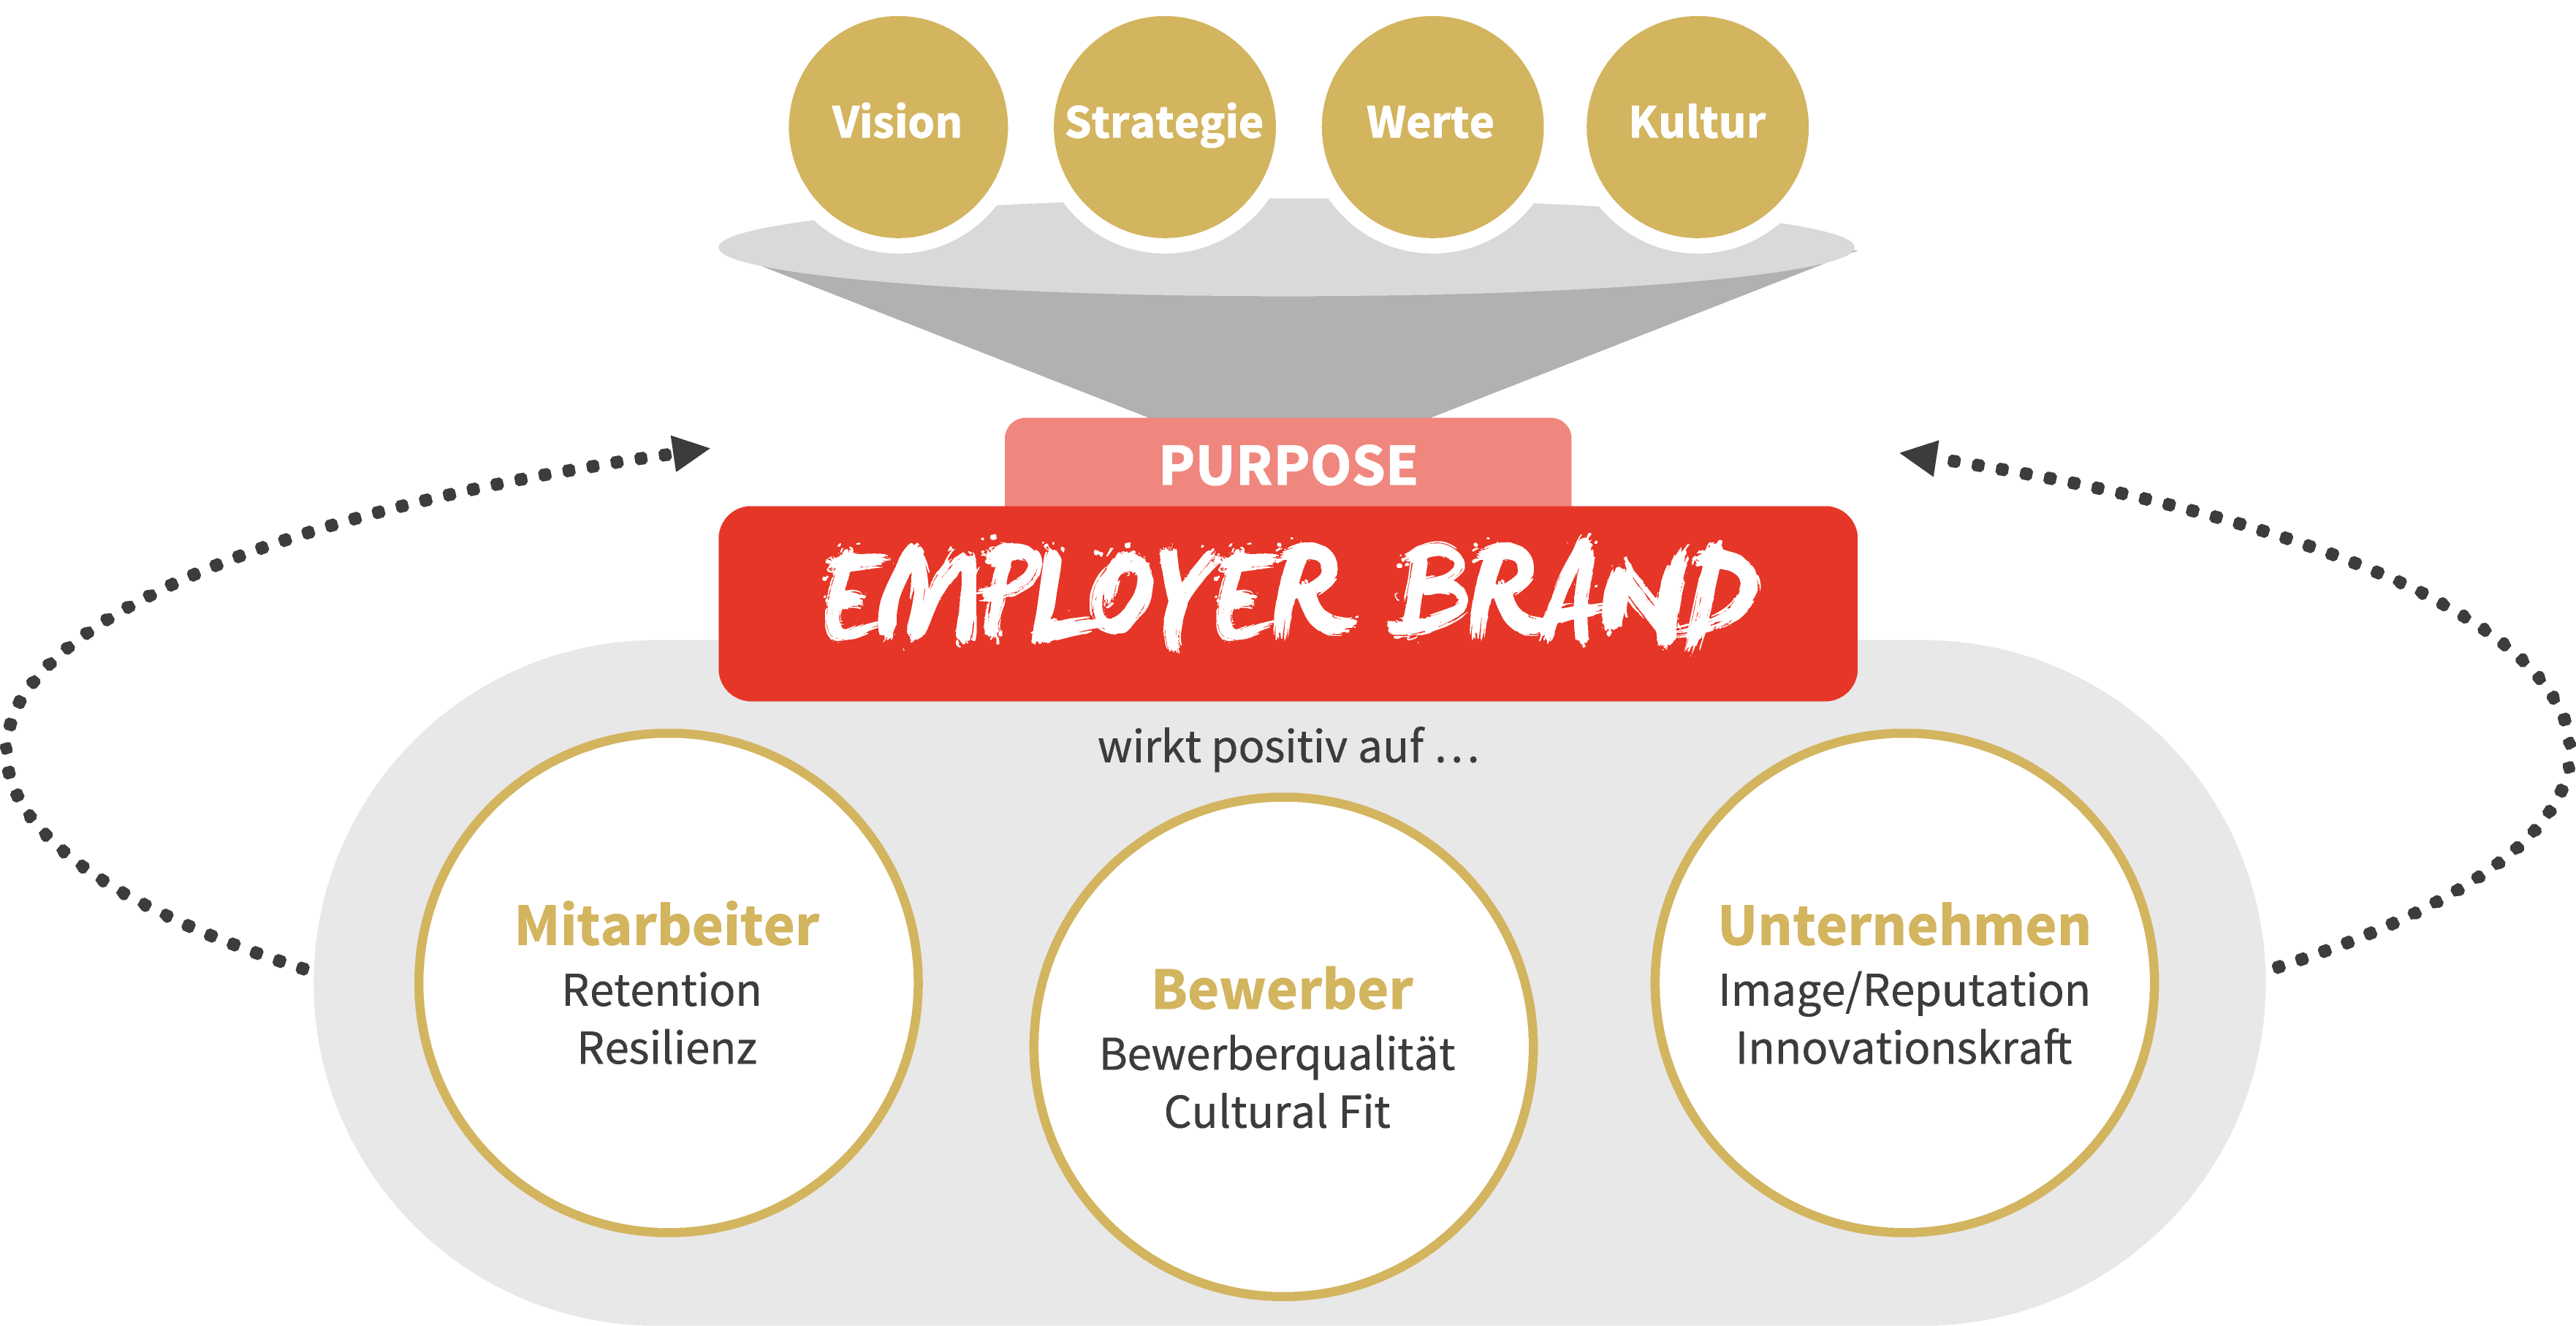 Prägende Faktoren sowie Wirkung des Purpose-orientierten Employer-Branding-Ansatzes von K12 auf Mitarbeiter, Bewerber und das Unternehmen